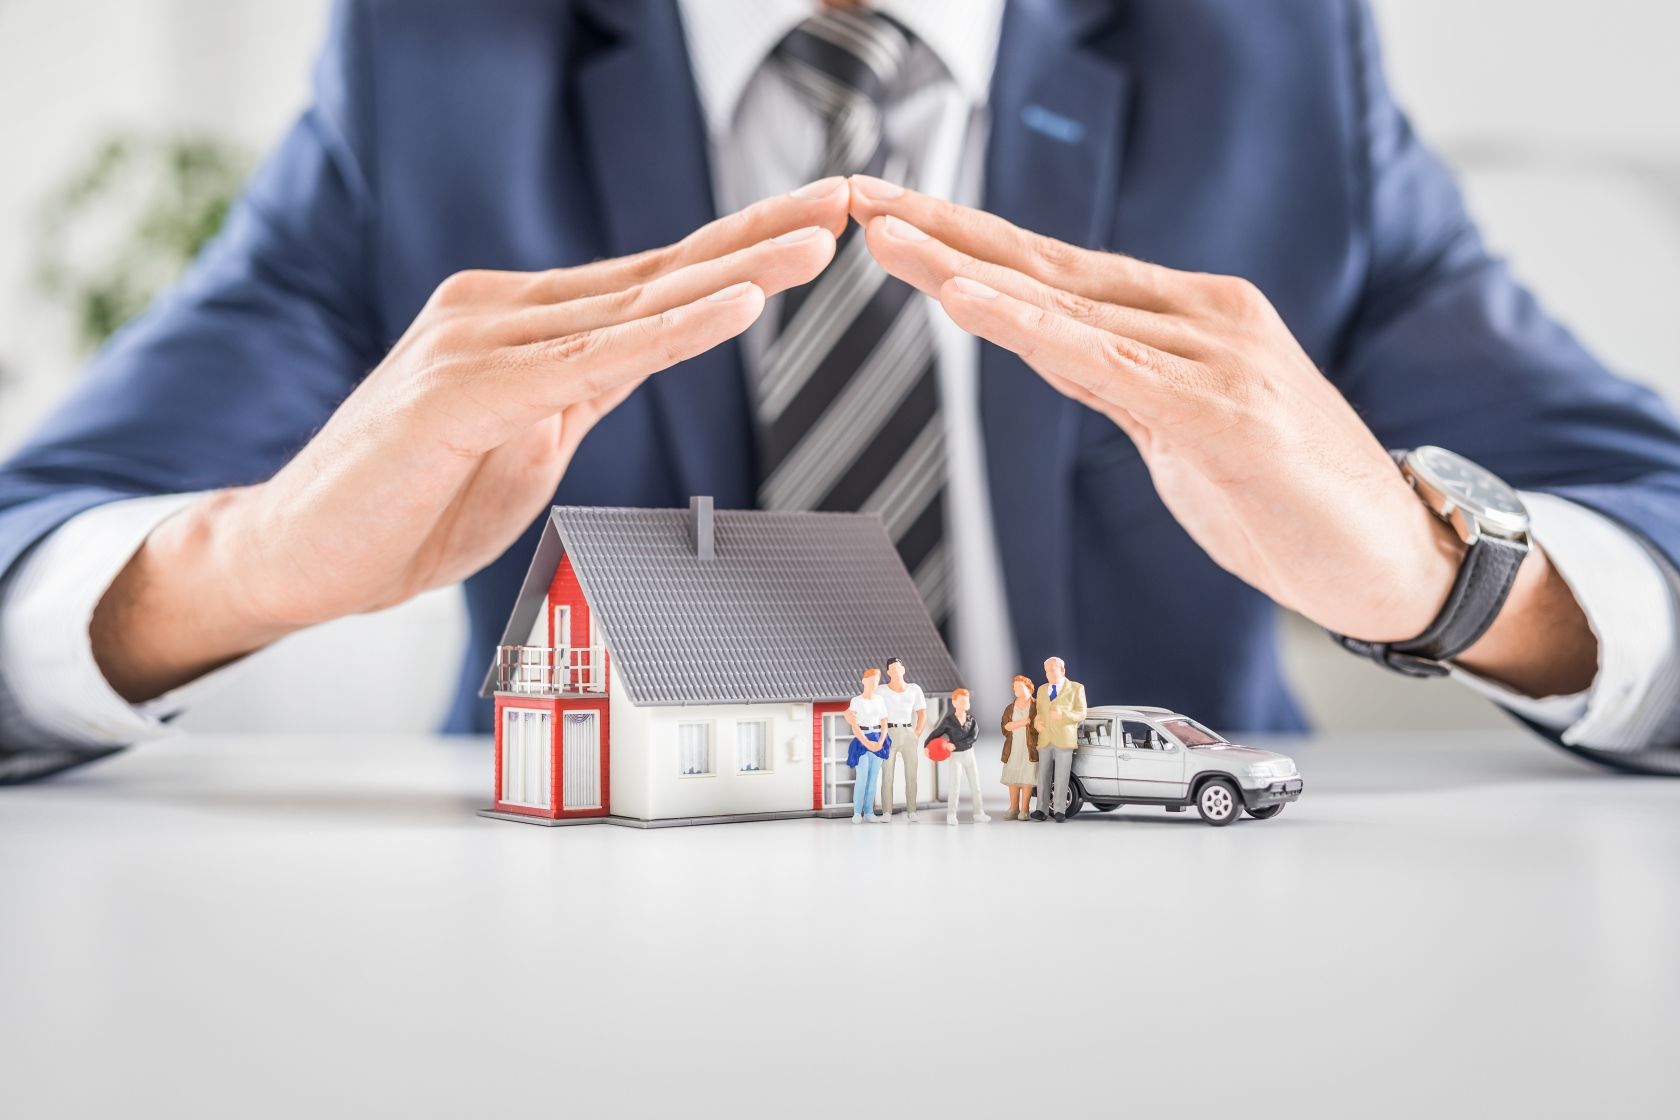 assurance hypothecaire vs vie